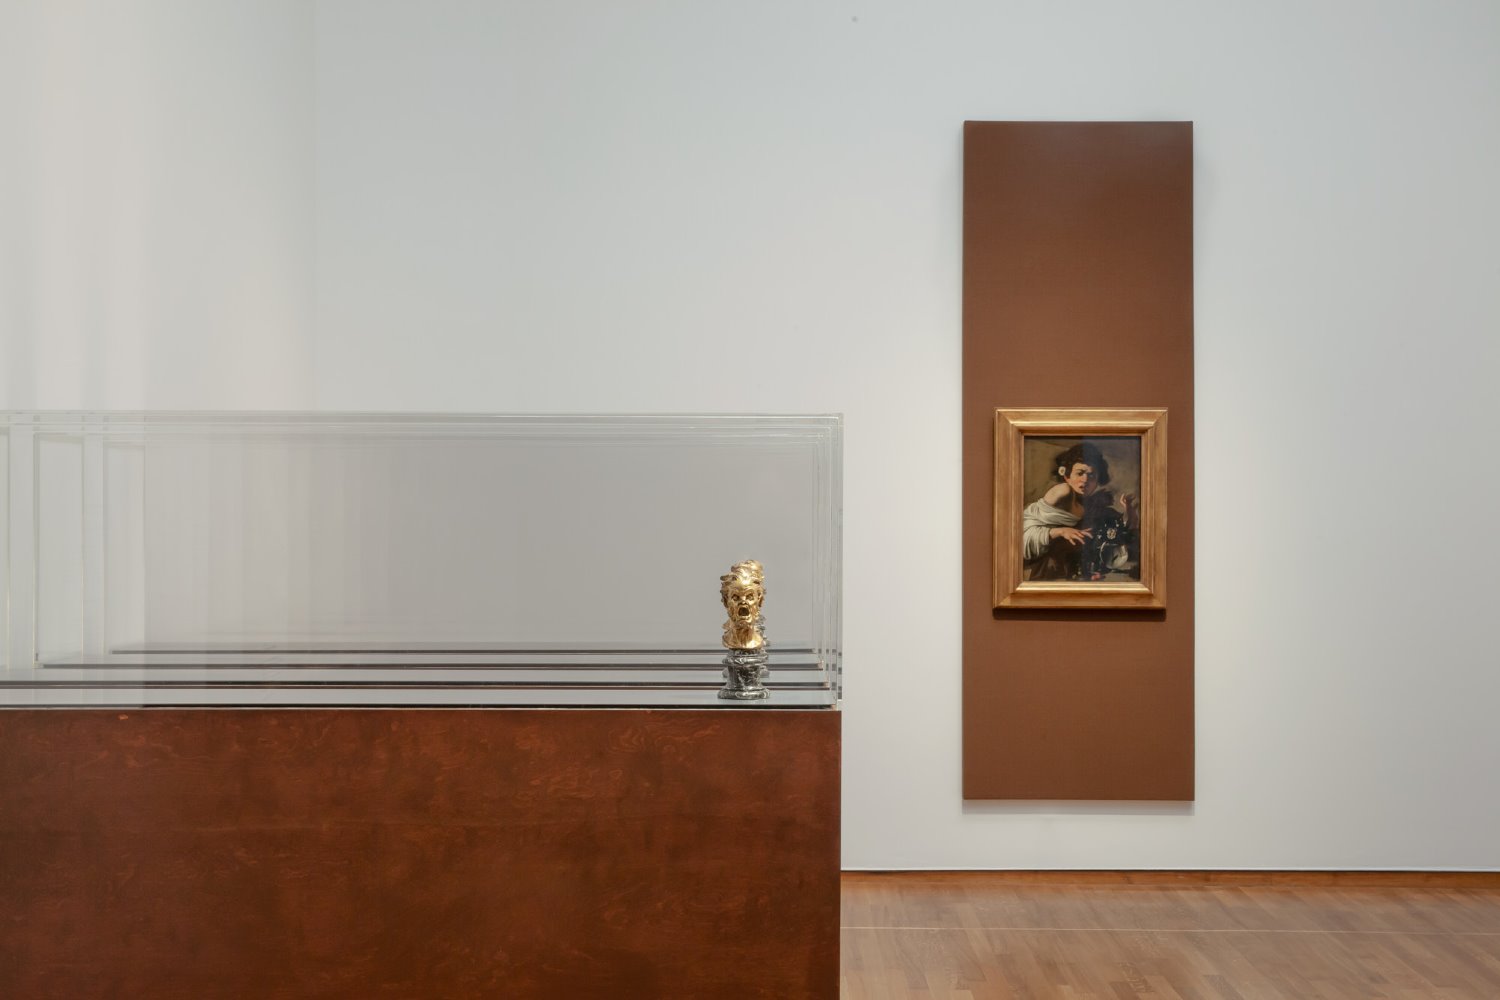 Exposición Caravaggio-Bernini Baroque in Rome por Studio Formafantasma en el Rijks Museum de Amsterdam 